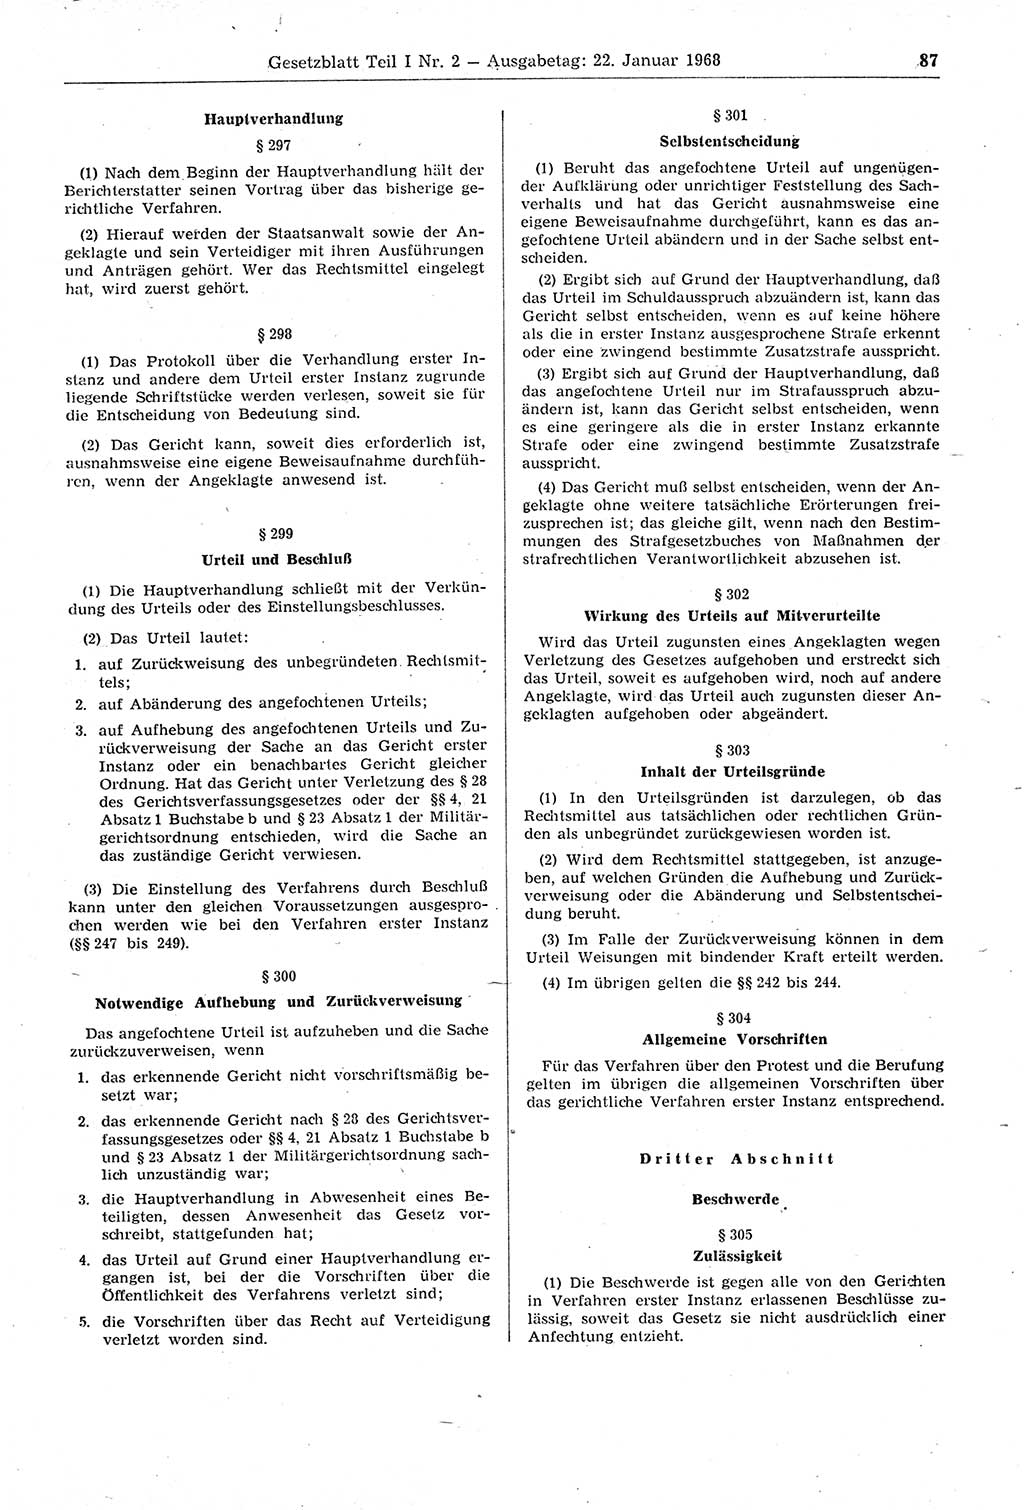 Gesetzblatt (GBl.) der Deutschen Demokratischen Republik (DDR) Teil Ⅰ 1968, Seite 87 (GBl. DDR Ⅰ 1968, S. 87)